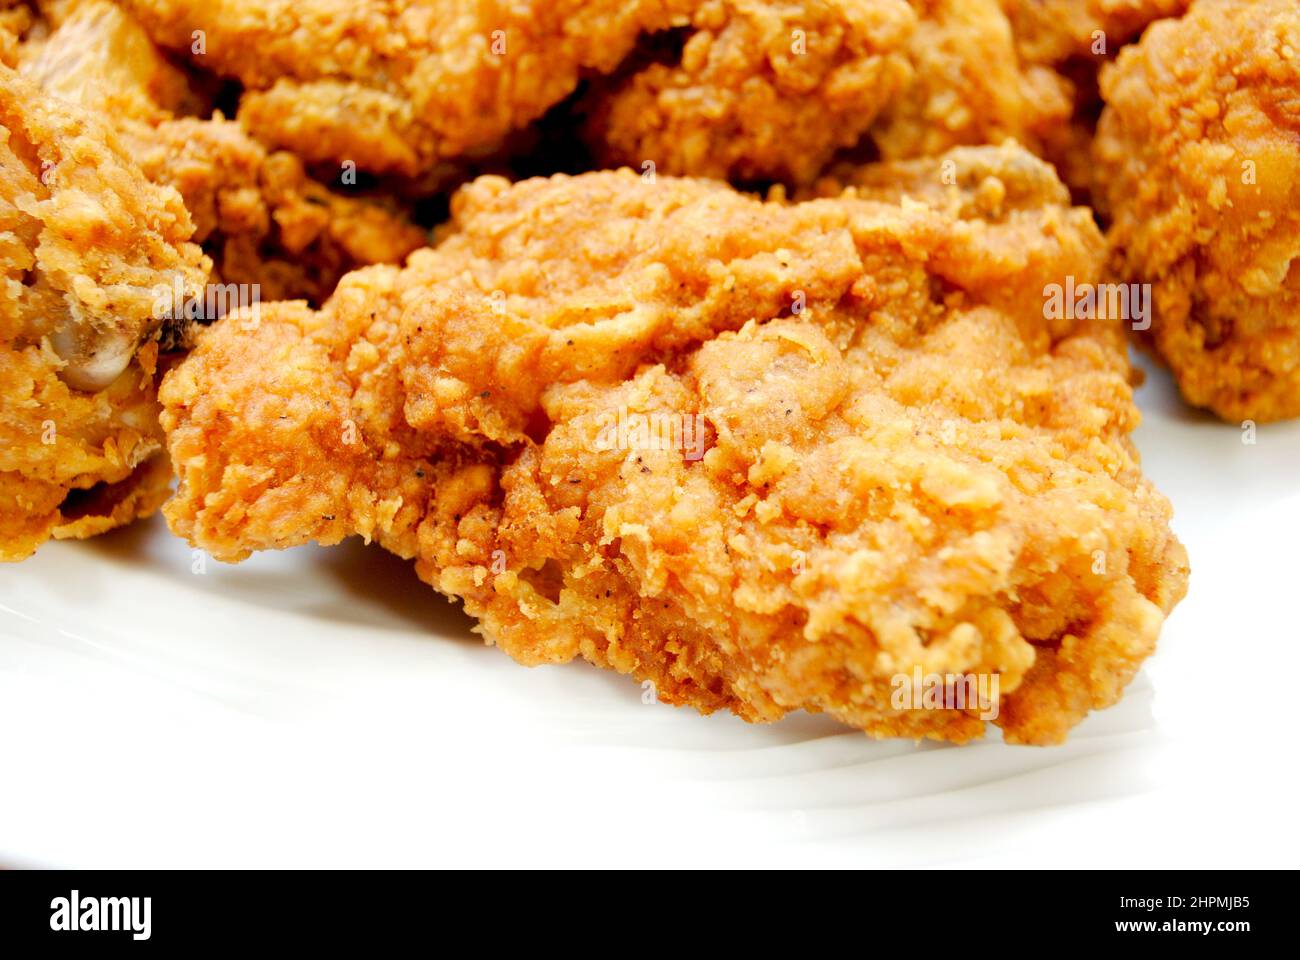 Primer plano de un pollo frito del sur en un plato blanco Foto de stock